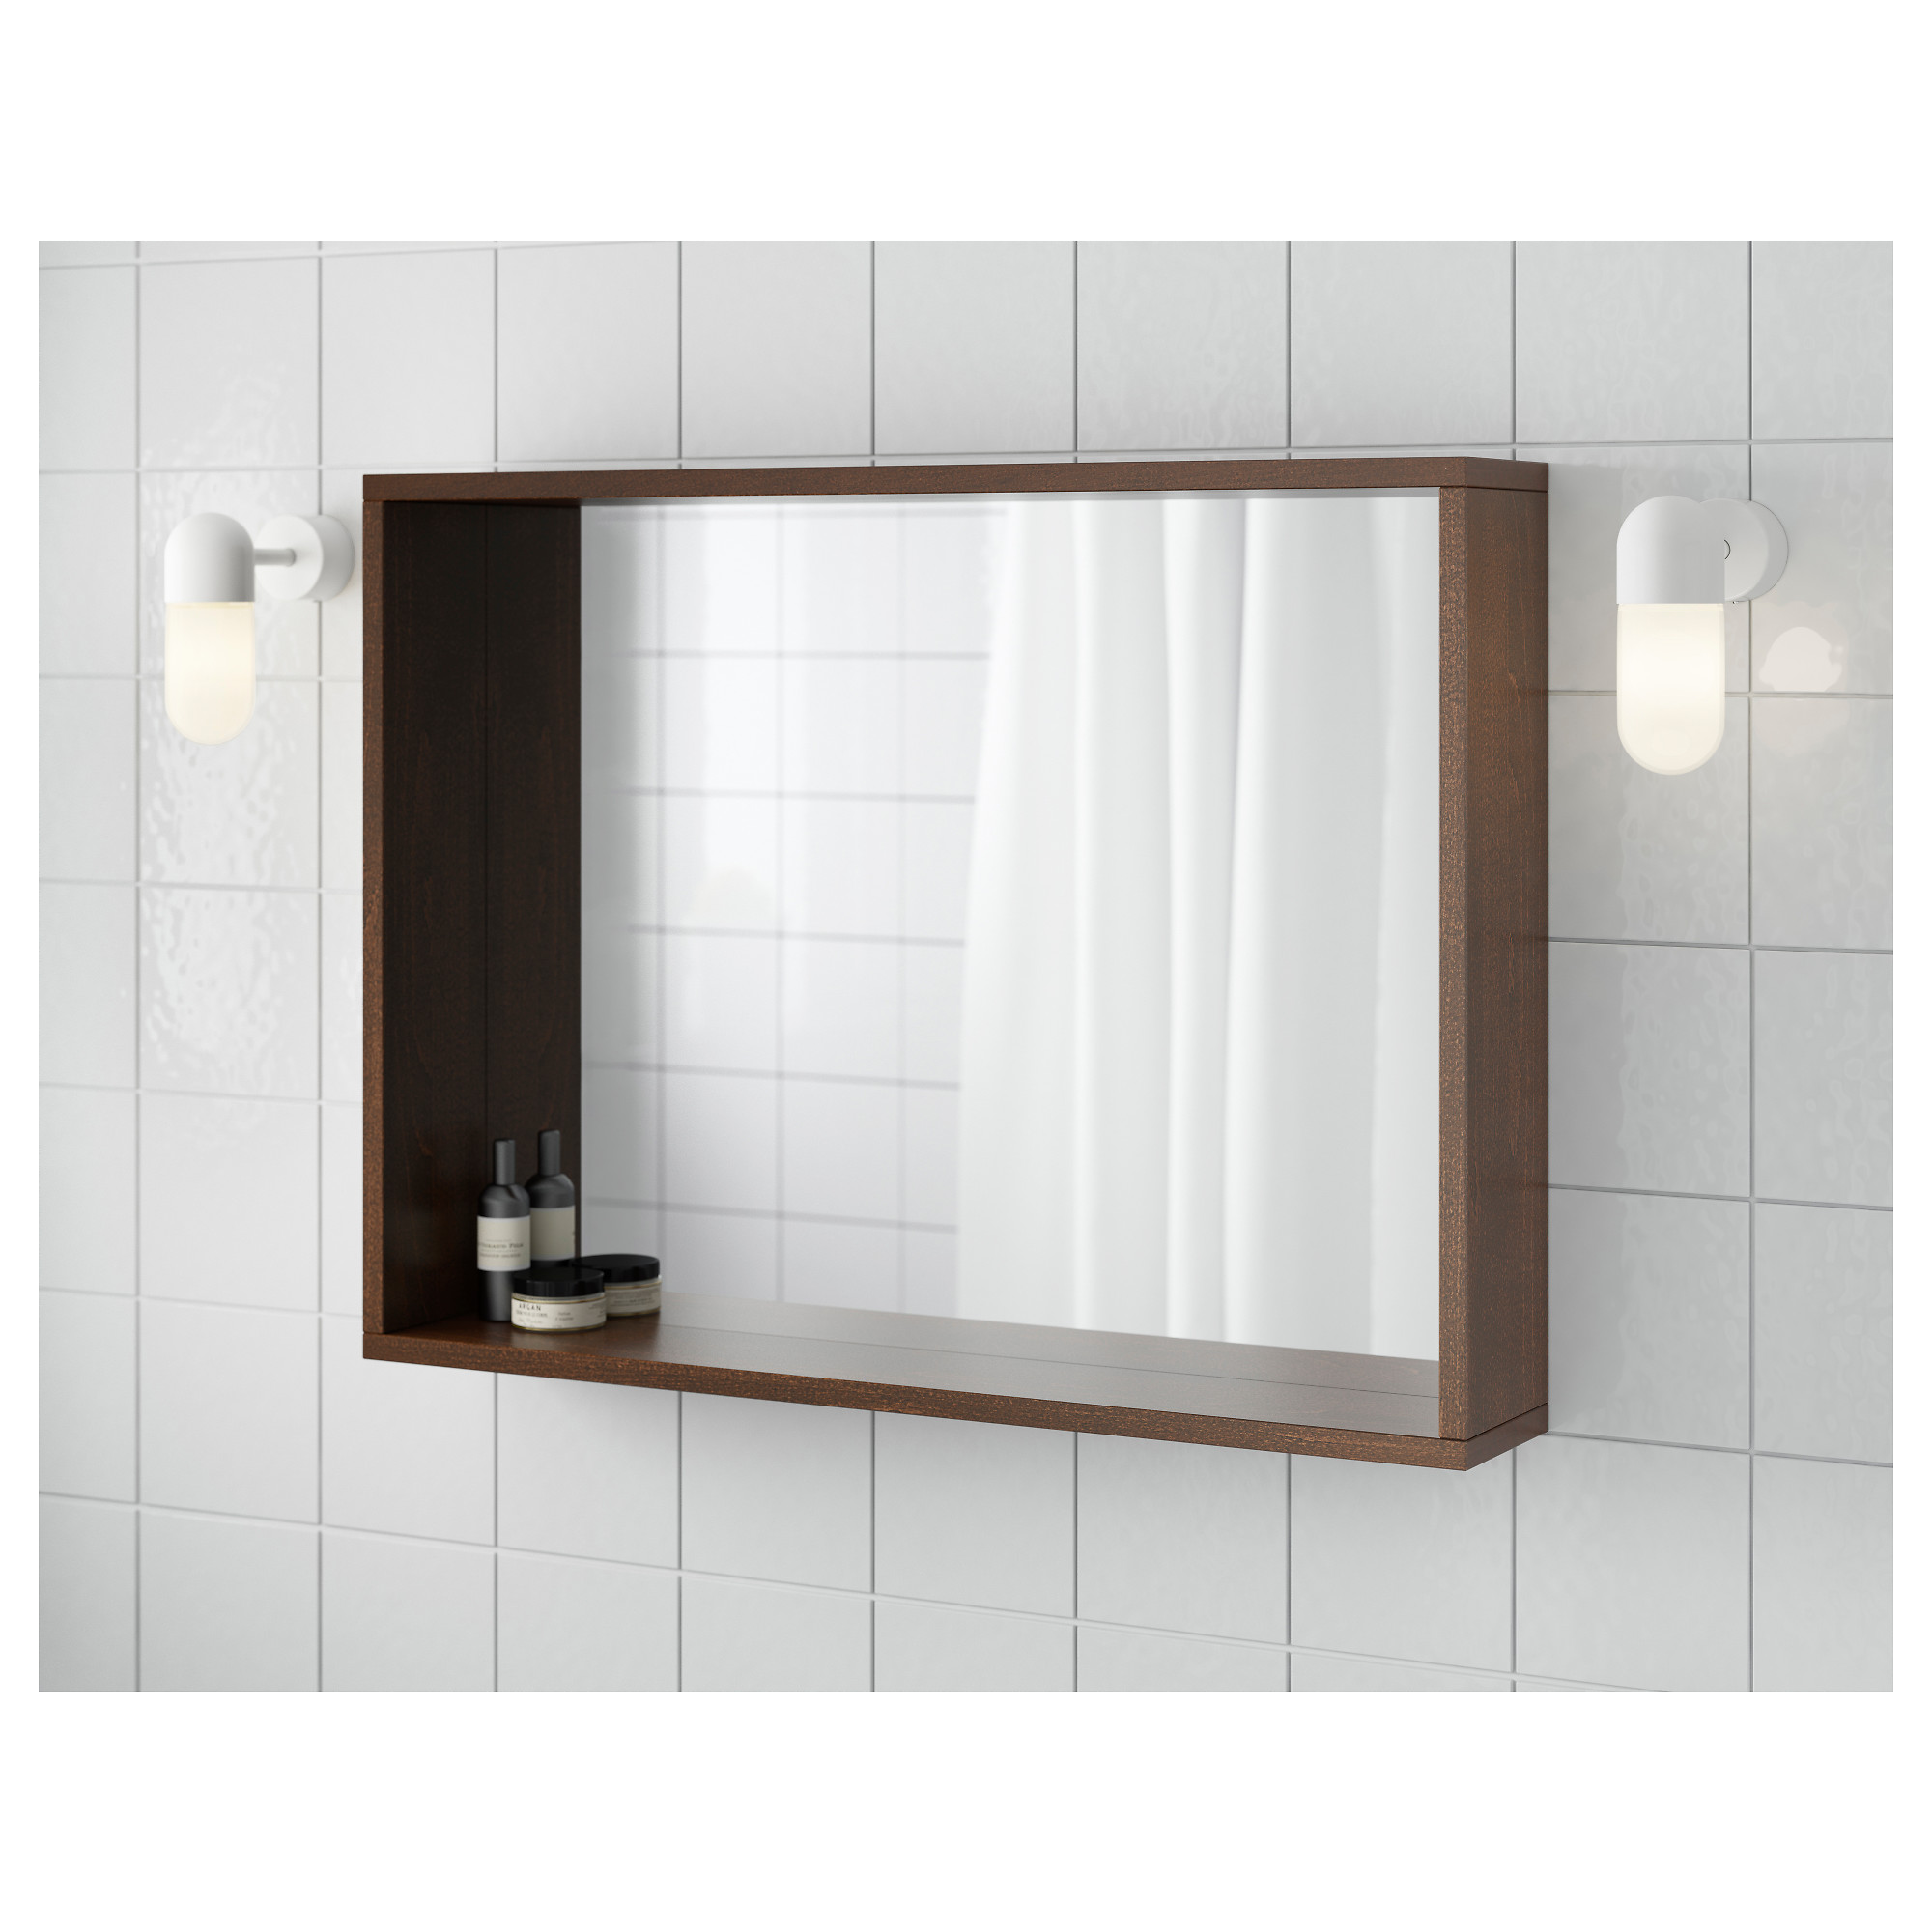 Molger Ikea Bathroom Mirrors Komnit, Ikea Bathroom Mirrors Ireland